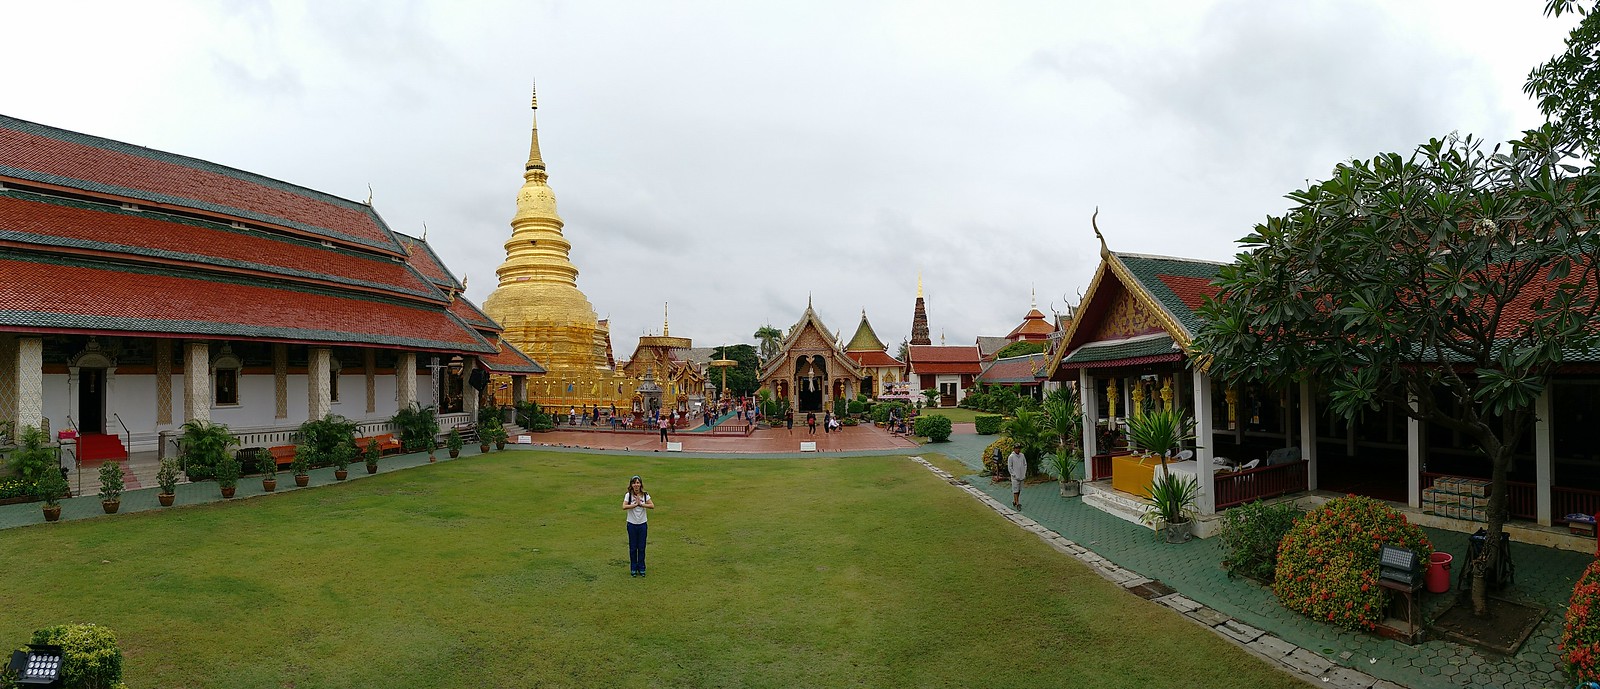 FIN DE AÑO EN EL NORTE DE TAILANDIA - Blogs de Tailandia - Lamphun, la ciudad antigua (14)